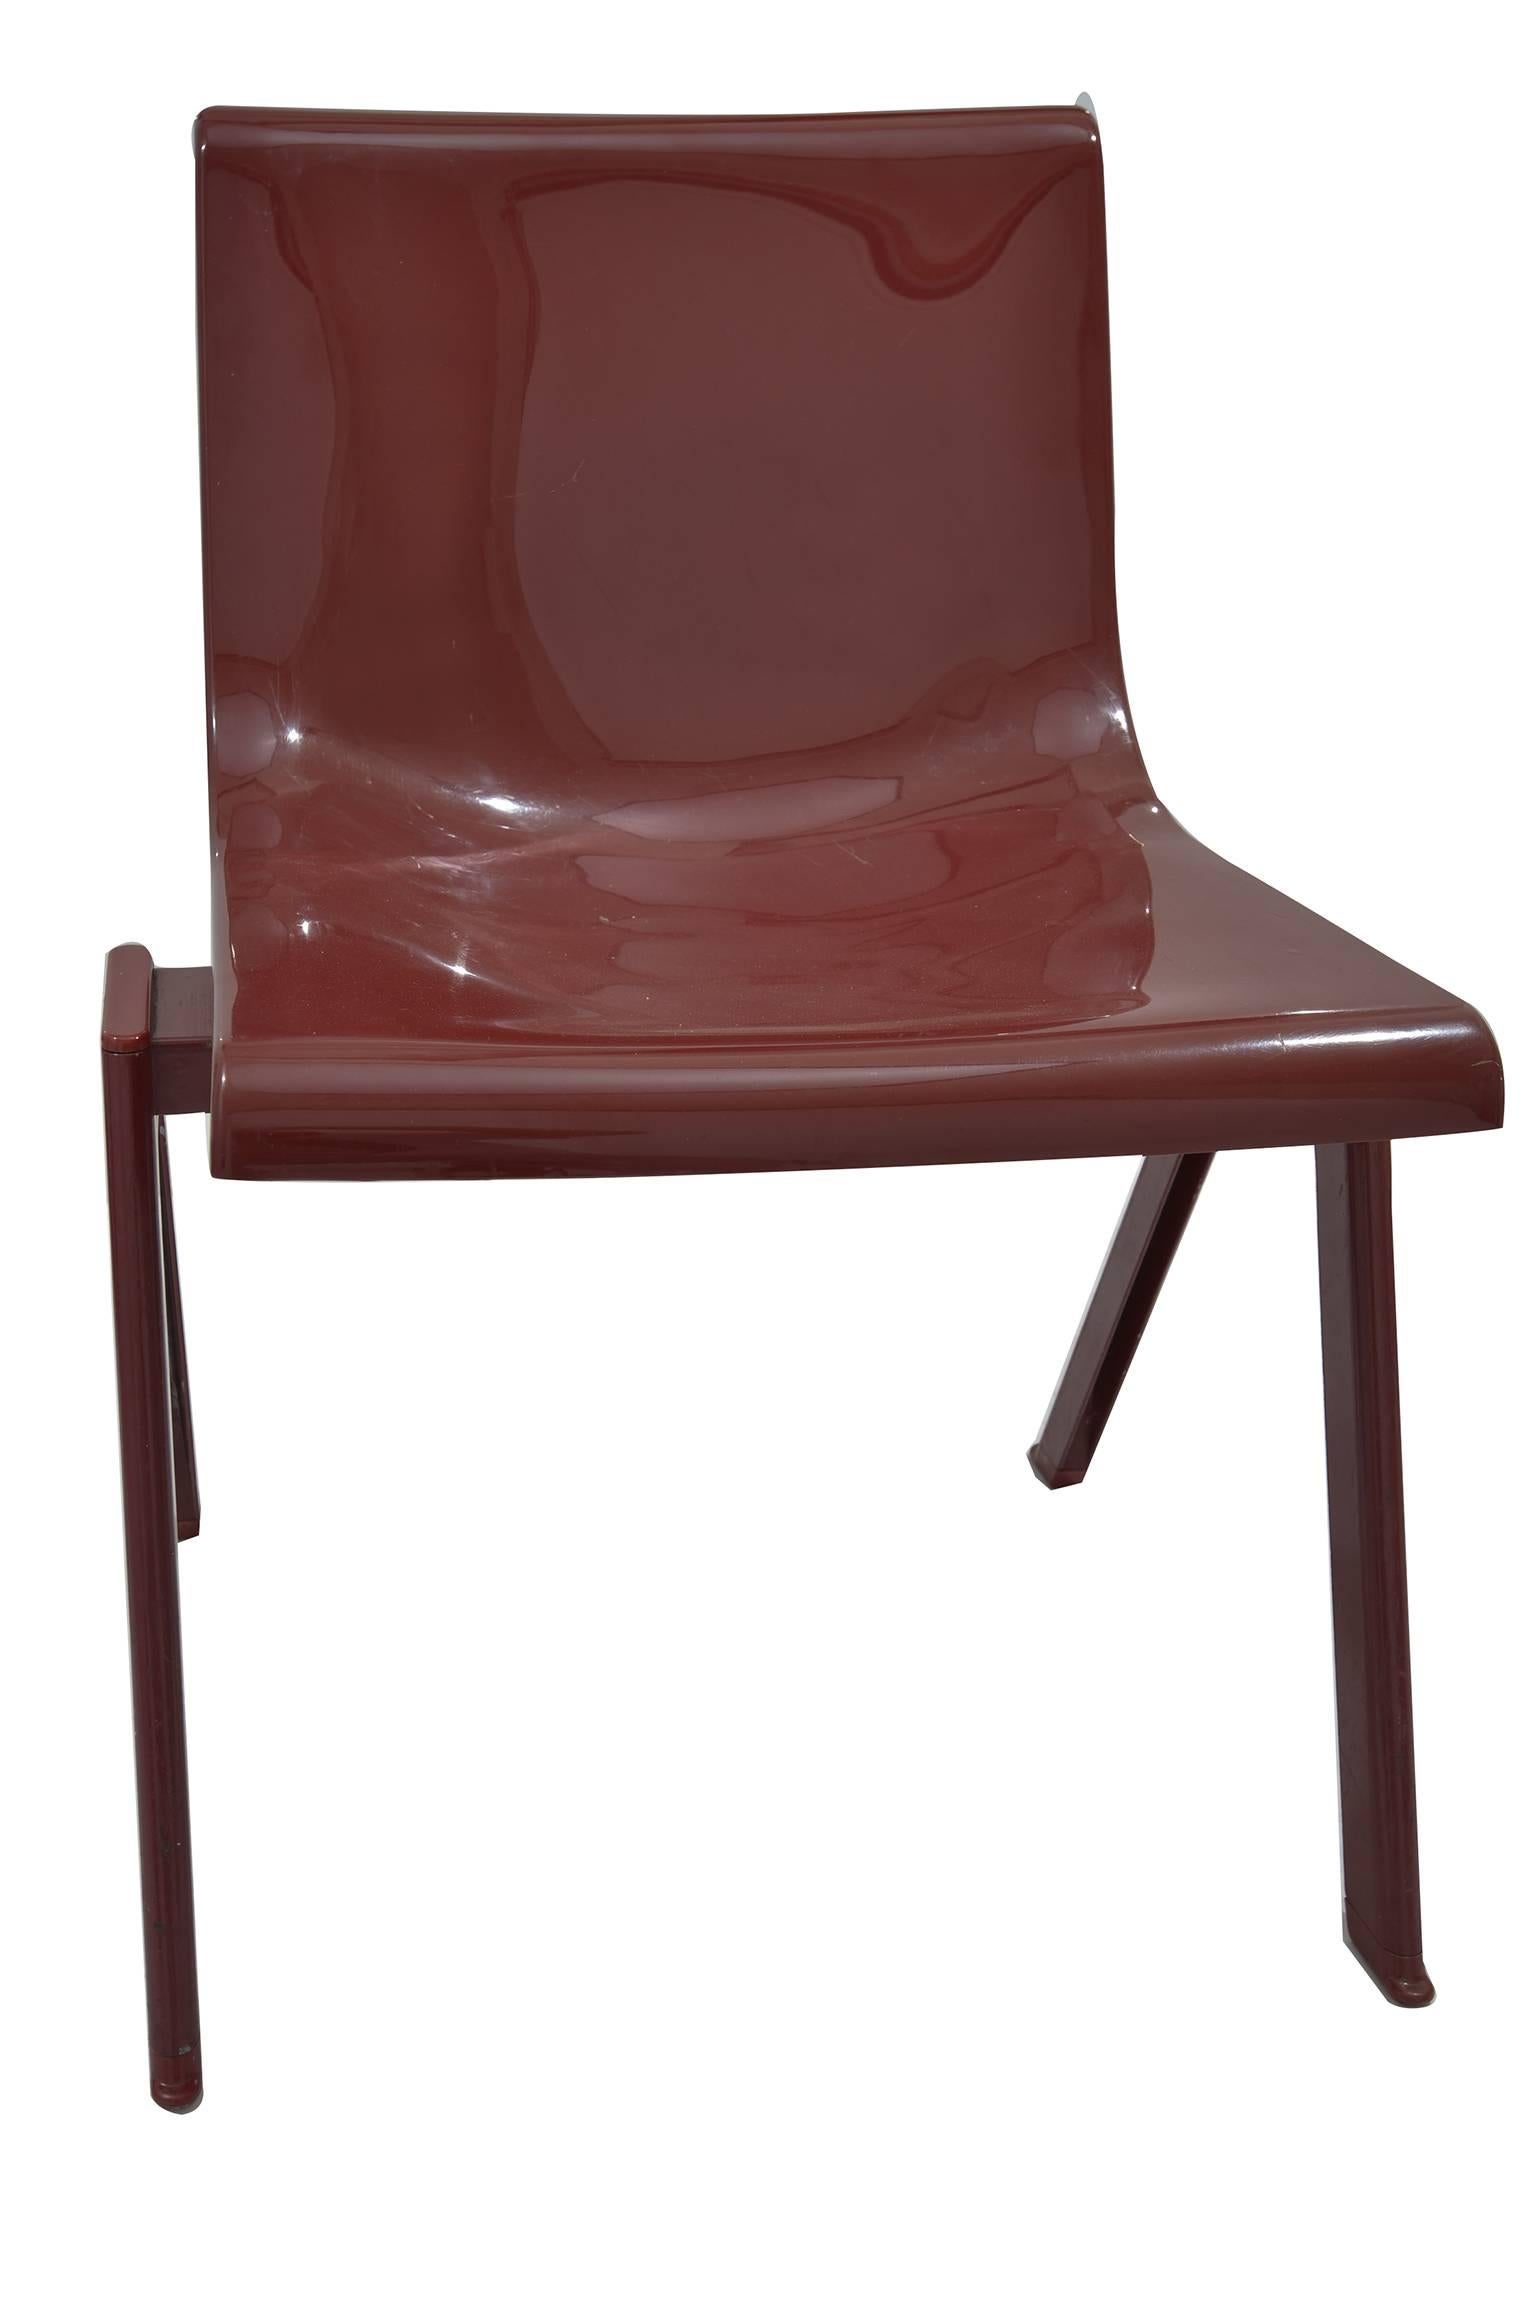 olivetti chair